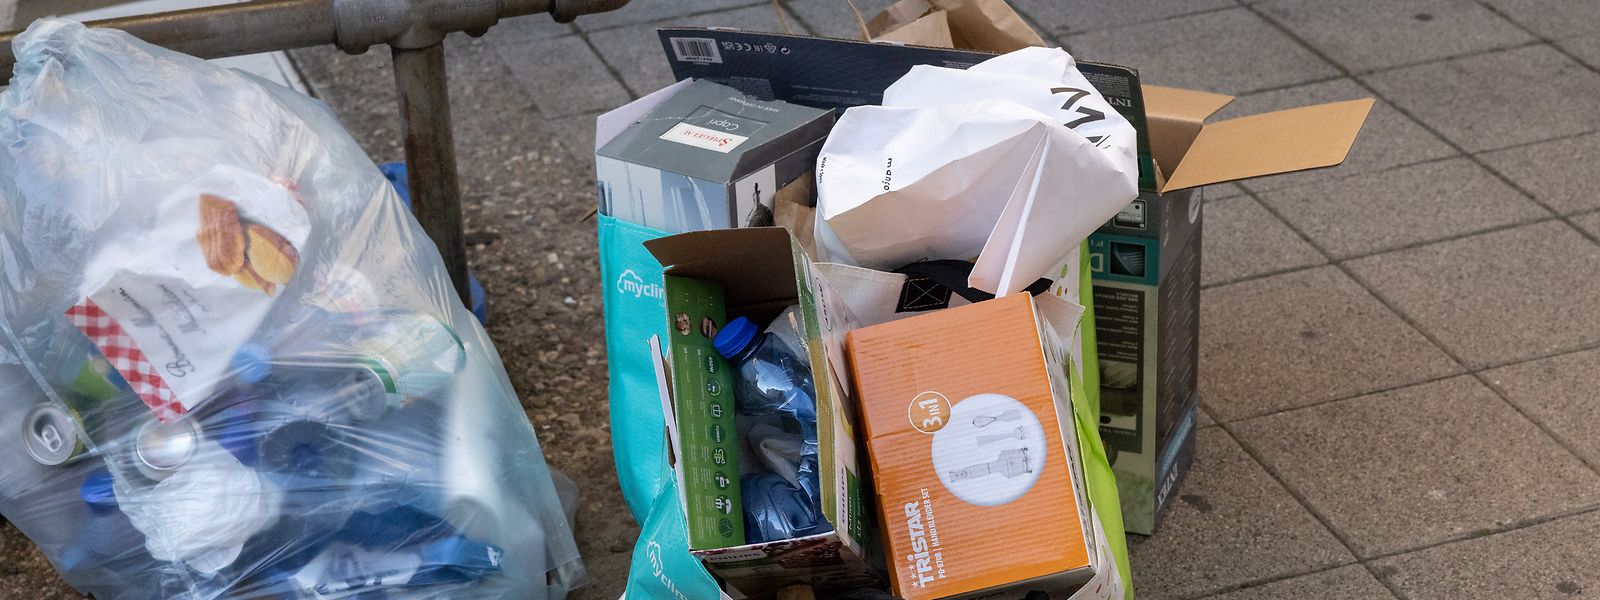 Plastikflaschen in Kartons gedrückt und den anderen Restmüll einfach auf dem Bürgersteig abgestellt - oft neben überfüllten öffentlichen Mülleimern. 